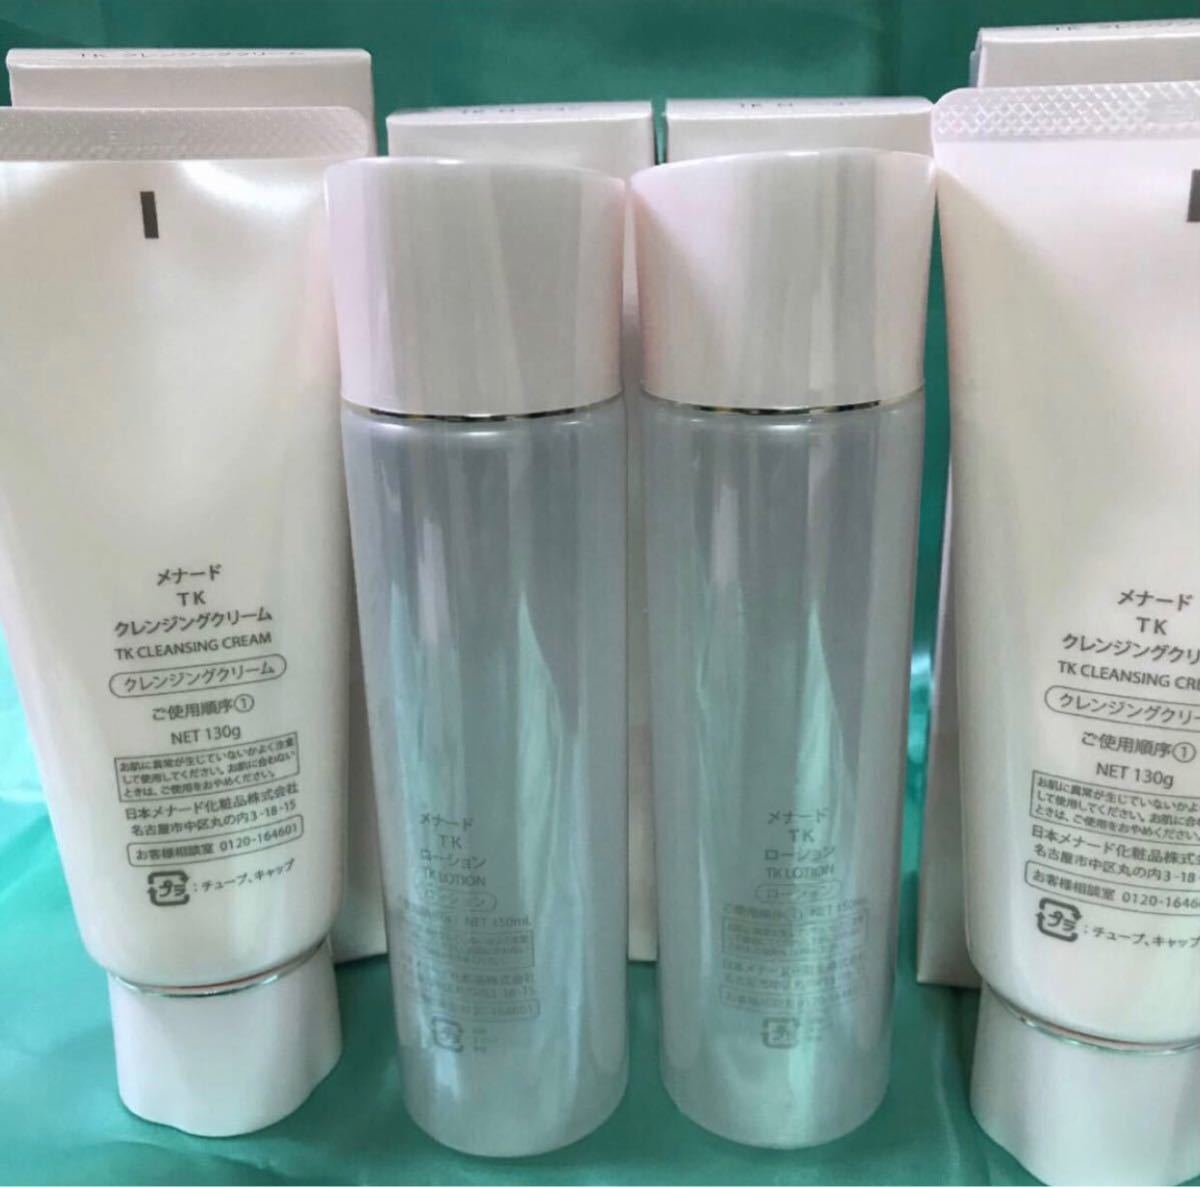 メナードTK 洗顔、化粧水、乳液3種セット - 基礎化粧品